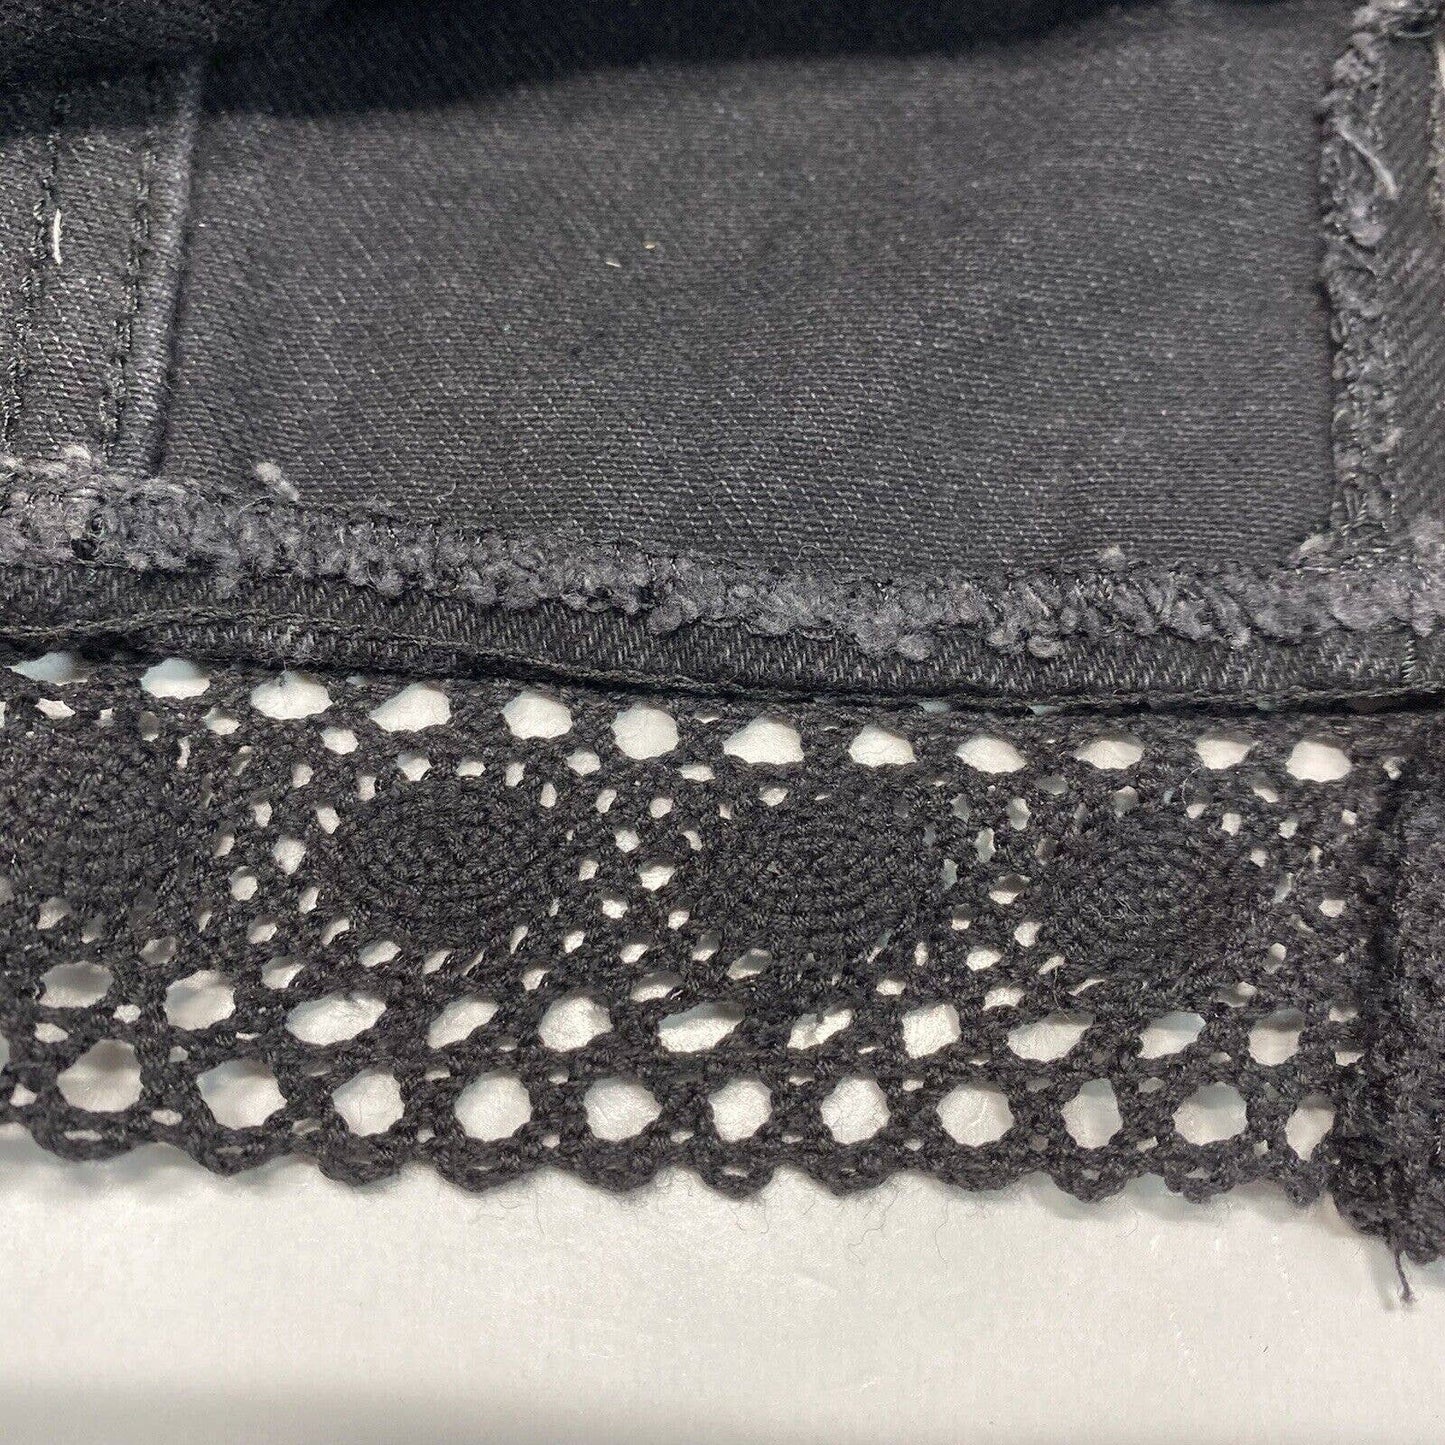 Vintage Jean St. Tropez Denim Skirt Sz 13/14 Black 100% Cotton *Measures Smaller